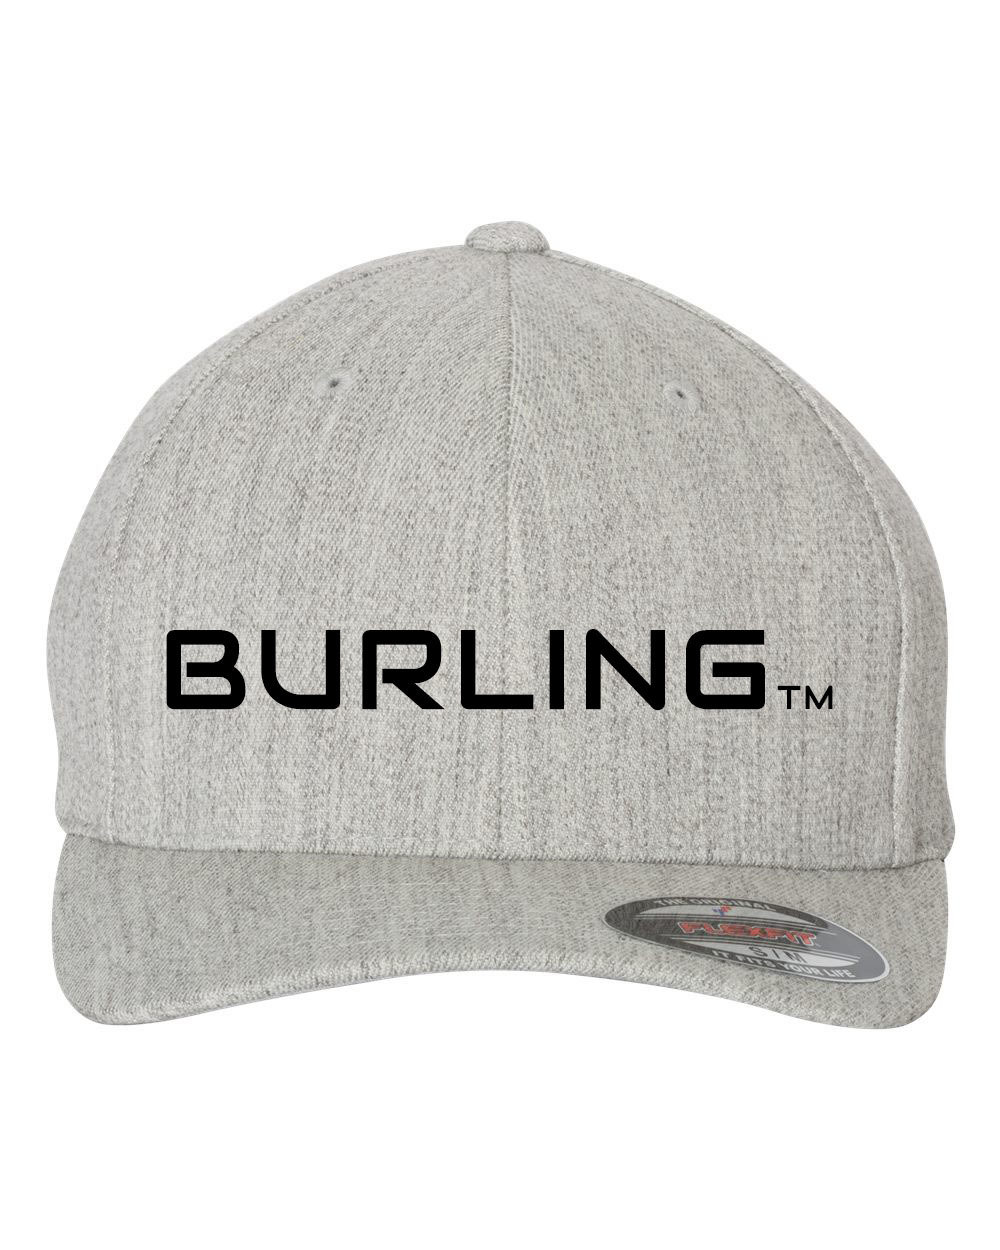 Burling Flexfit Hat